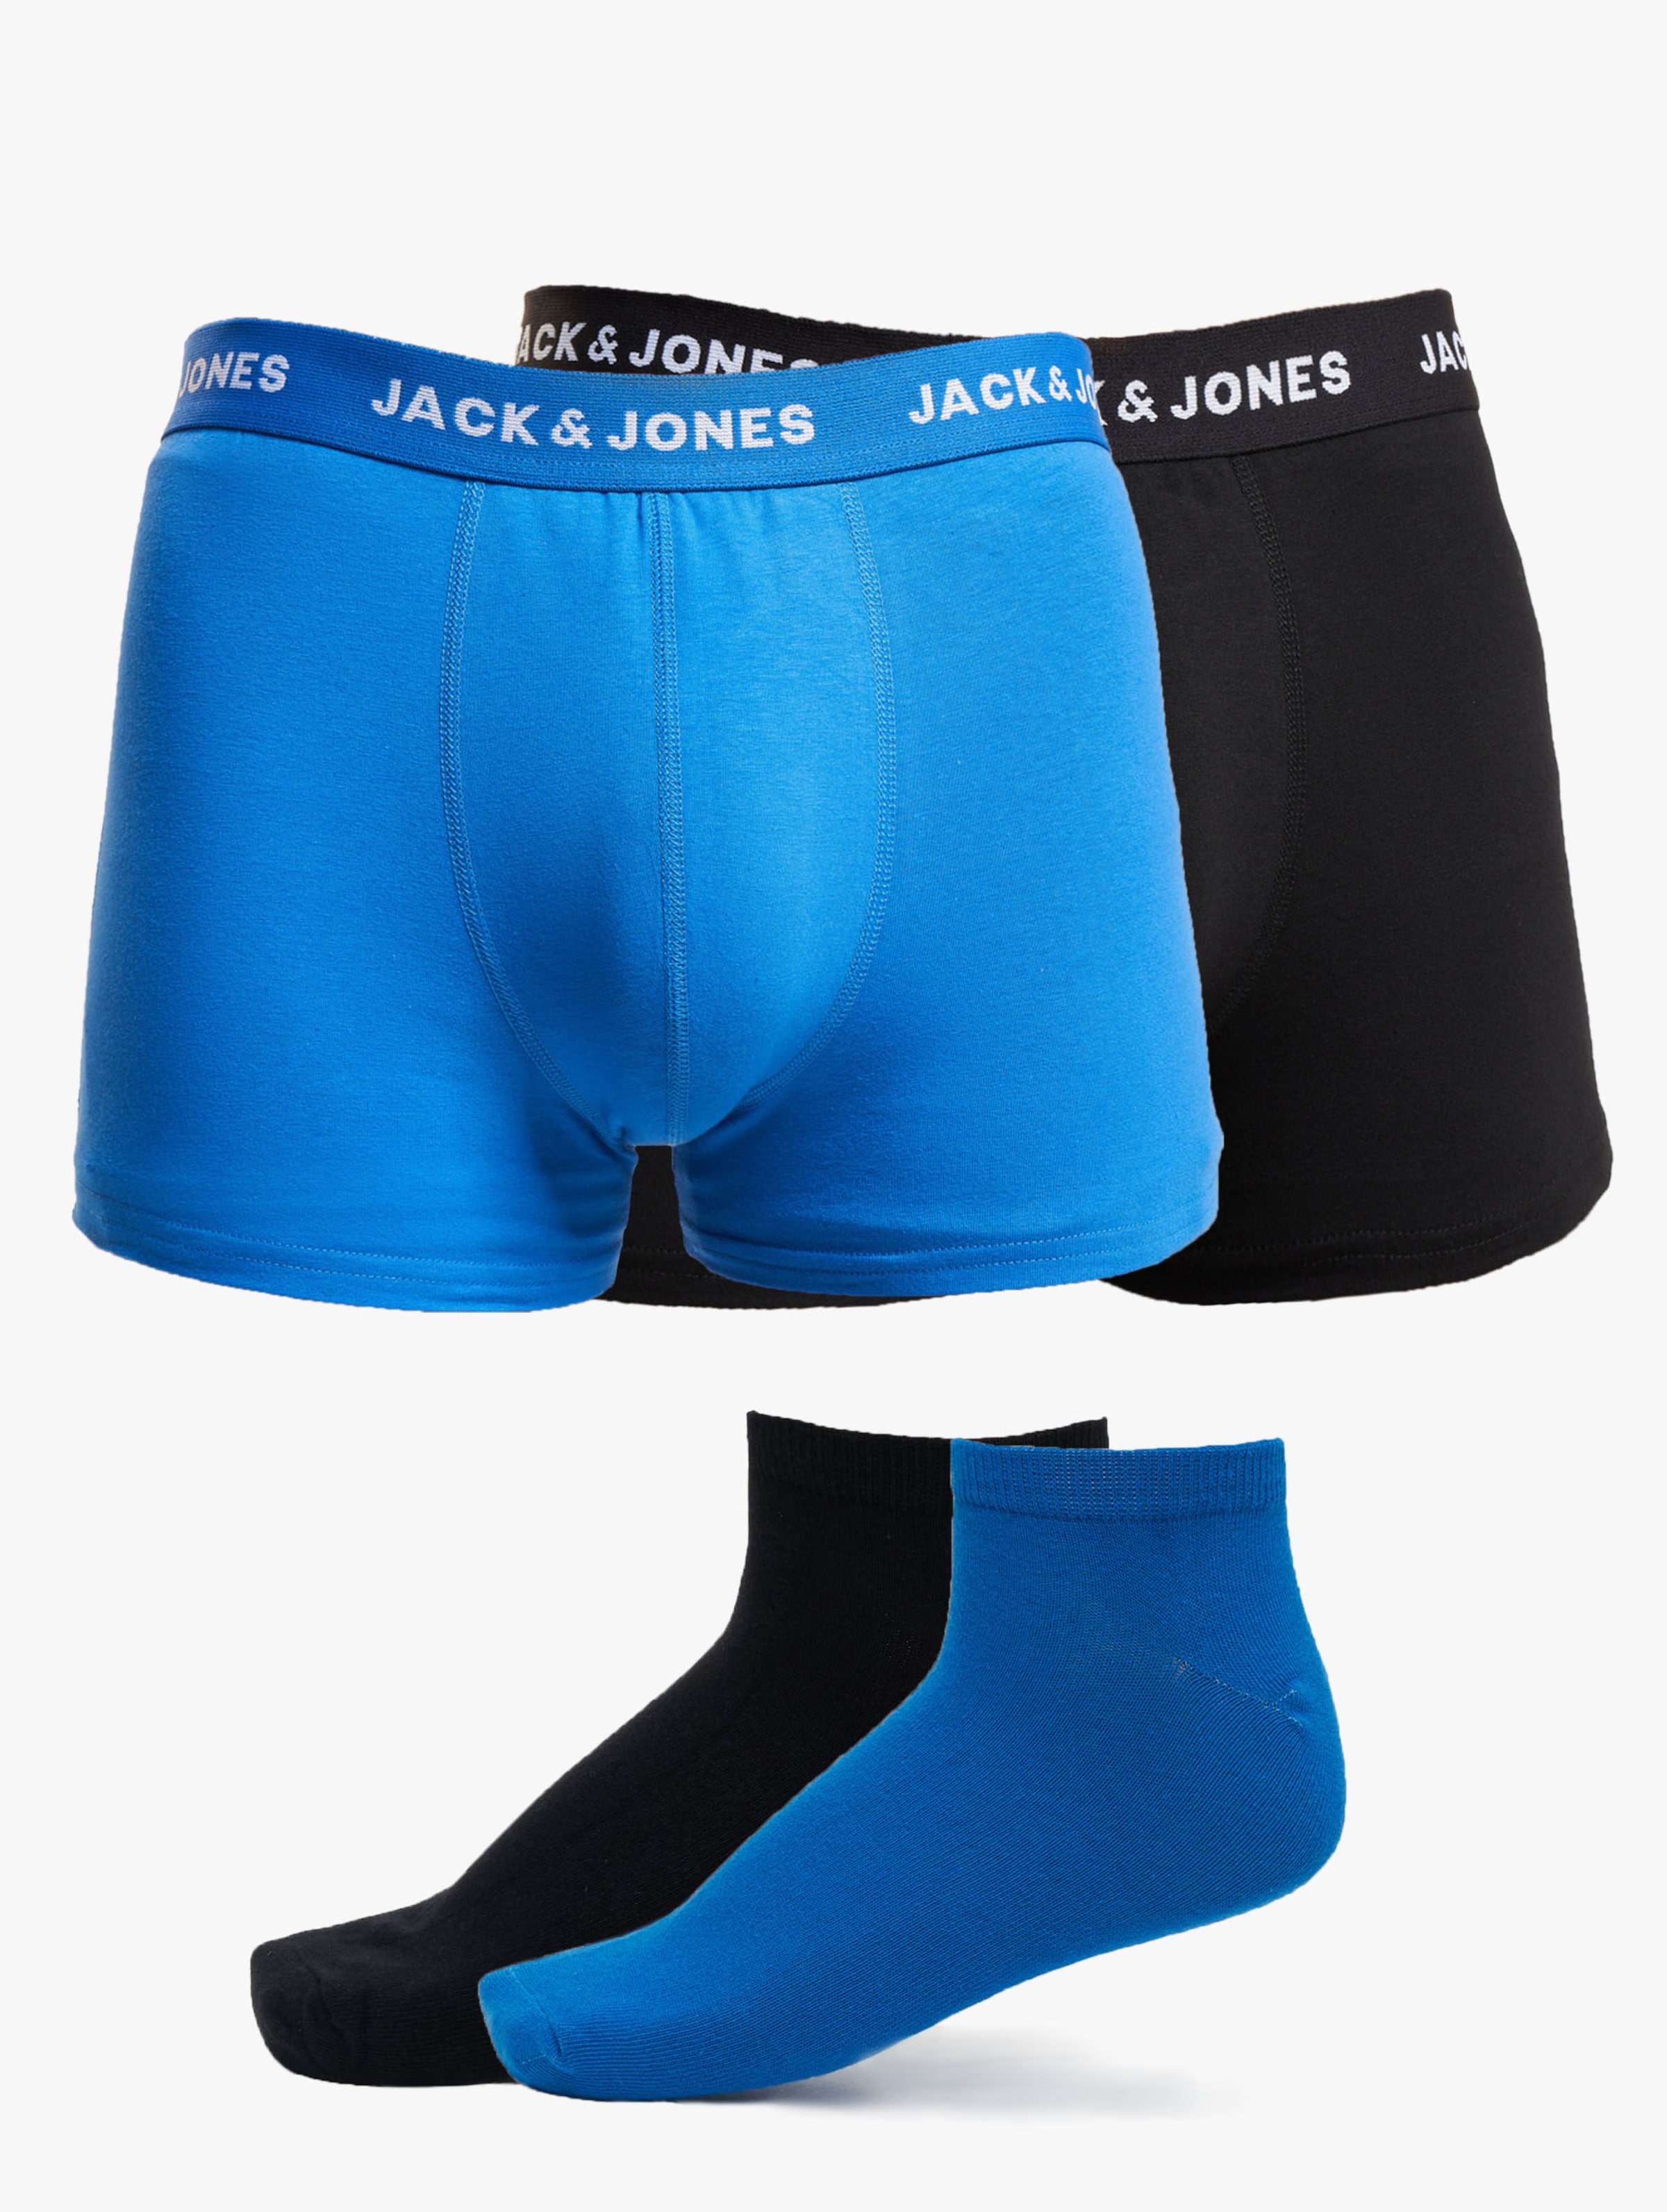 JACK & JONES Jacdavid solid weekendset (2+2-pack) - heren boxers en enkelsokken - kobalt blauw en zwart - Maat: M